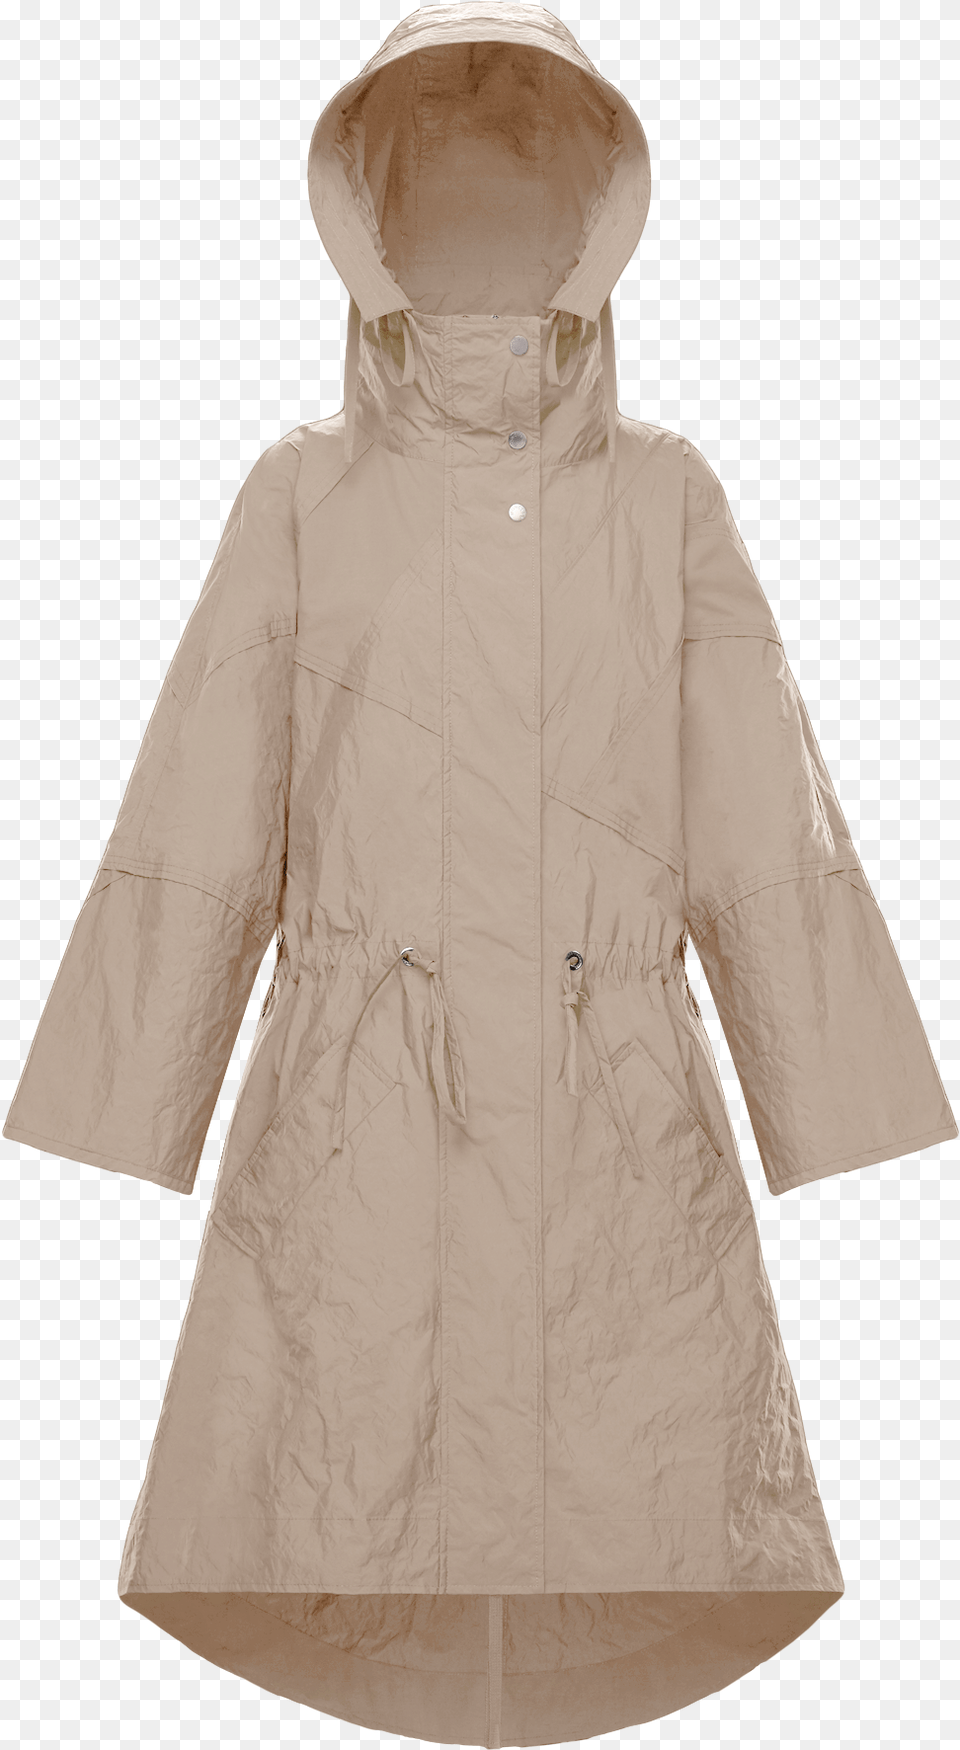 Wrinkled Paper Like Long Moncler Parka Hooded, Clothing, Coat, Raincoat Free Transparent Png